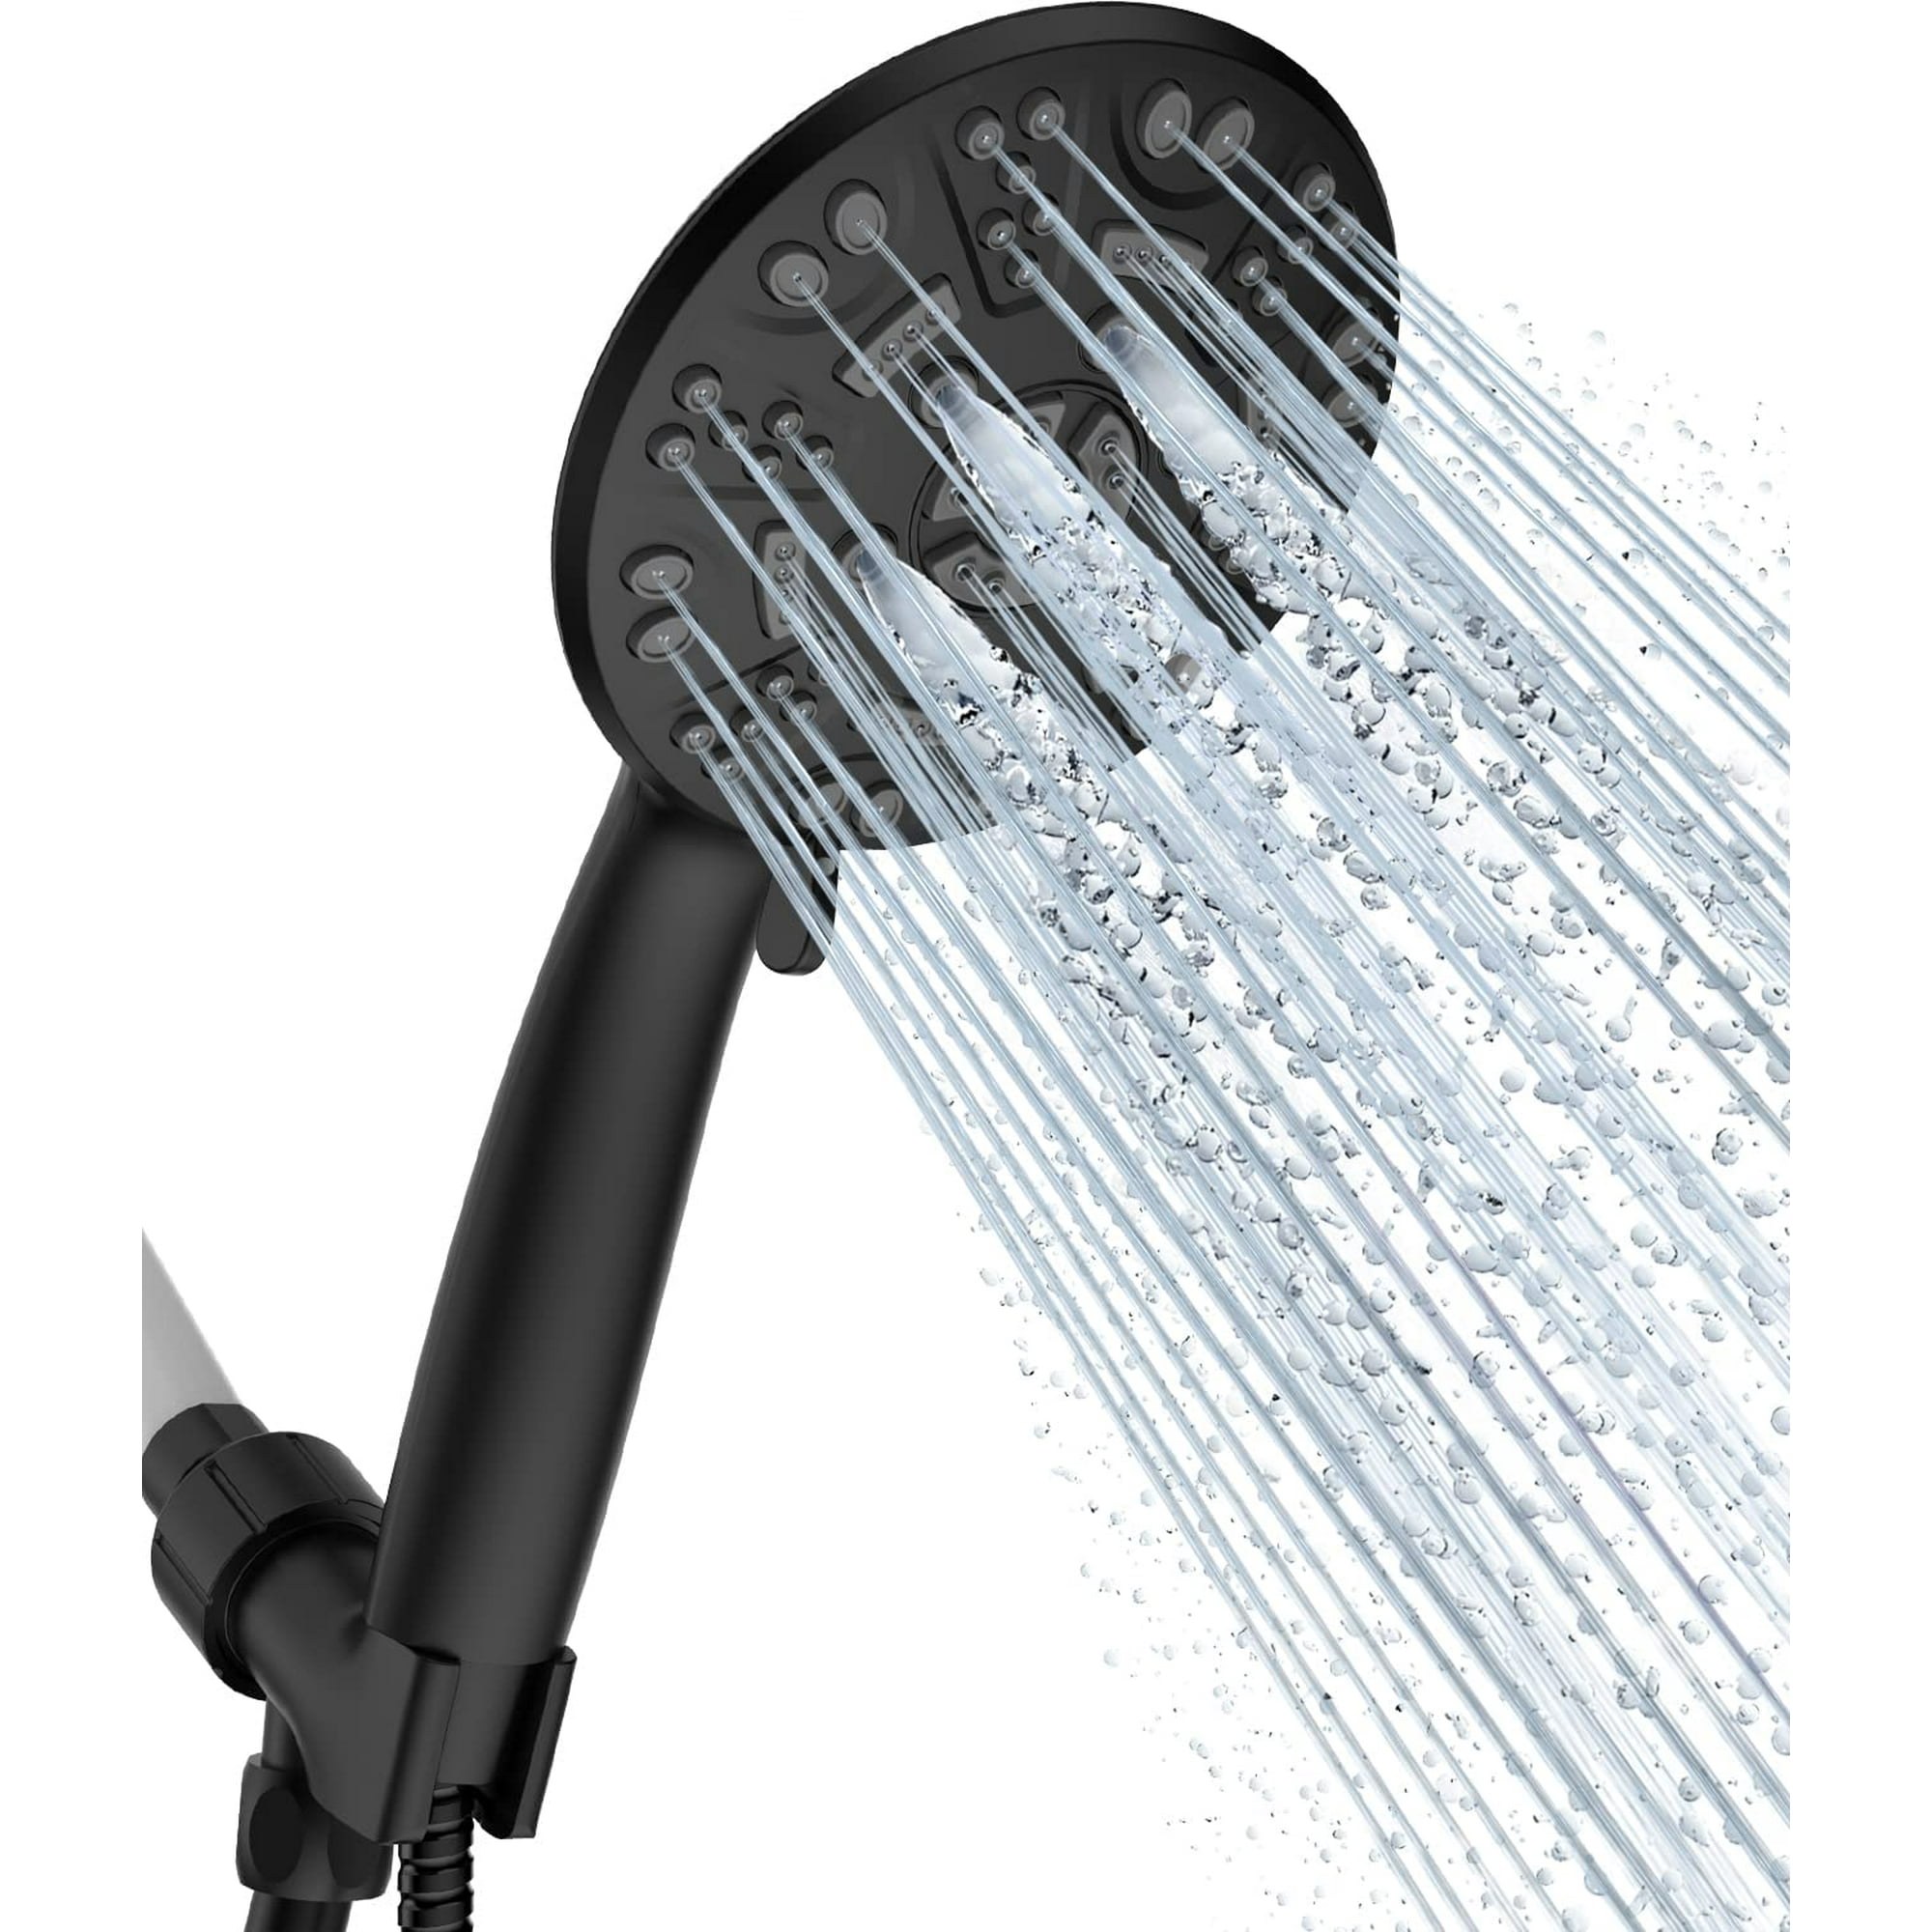 Cabezal de ducha con aumento de presión - Cabezal de ducha ahorrador de  agua de alta presión Mejor p XianweiShao